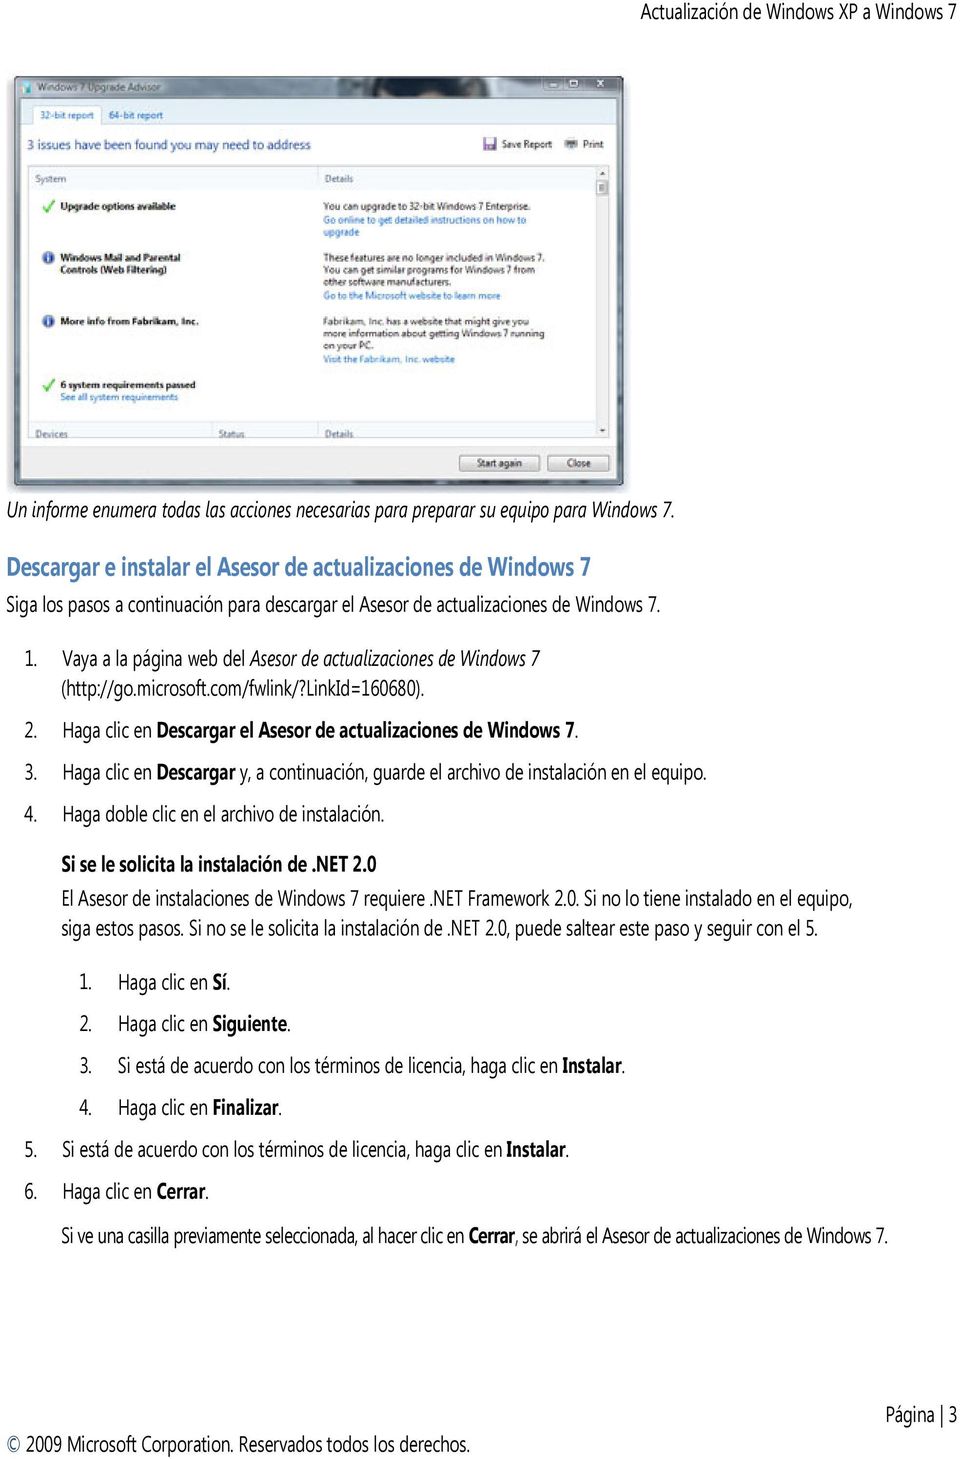 Vaya a la página web del Asesor de actualizaciones de Windows 7 (http://go.microsoft.com/fwlink/?linkid=160680). 2. Haga clic en Descargar el Asesor de actualizaciones de Windows 7. 3.